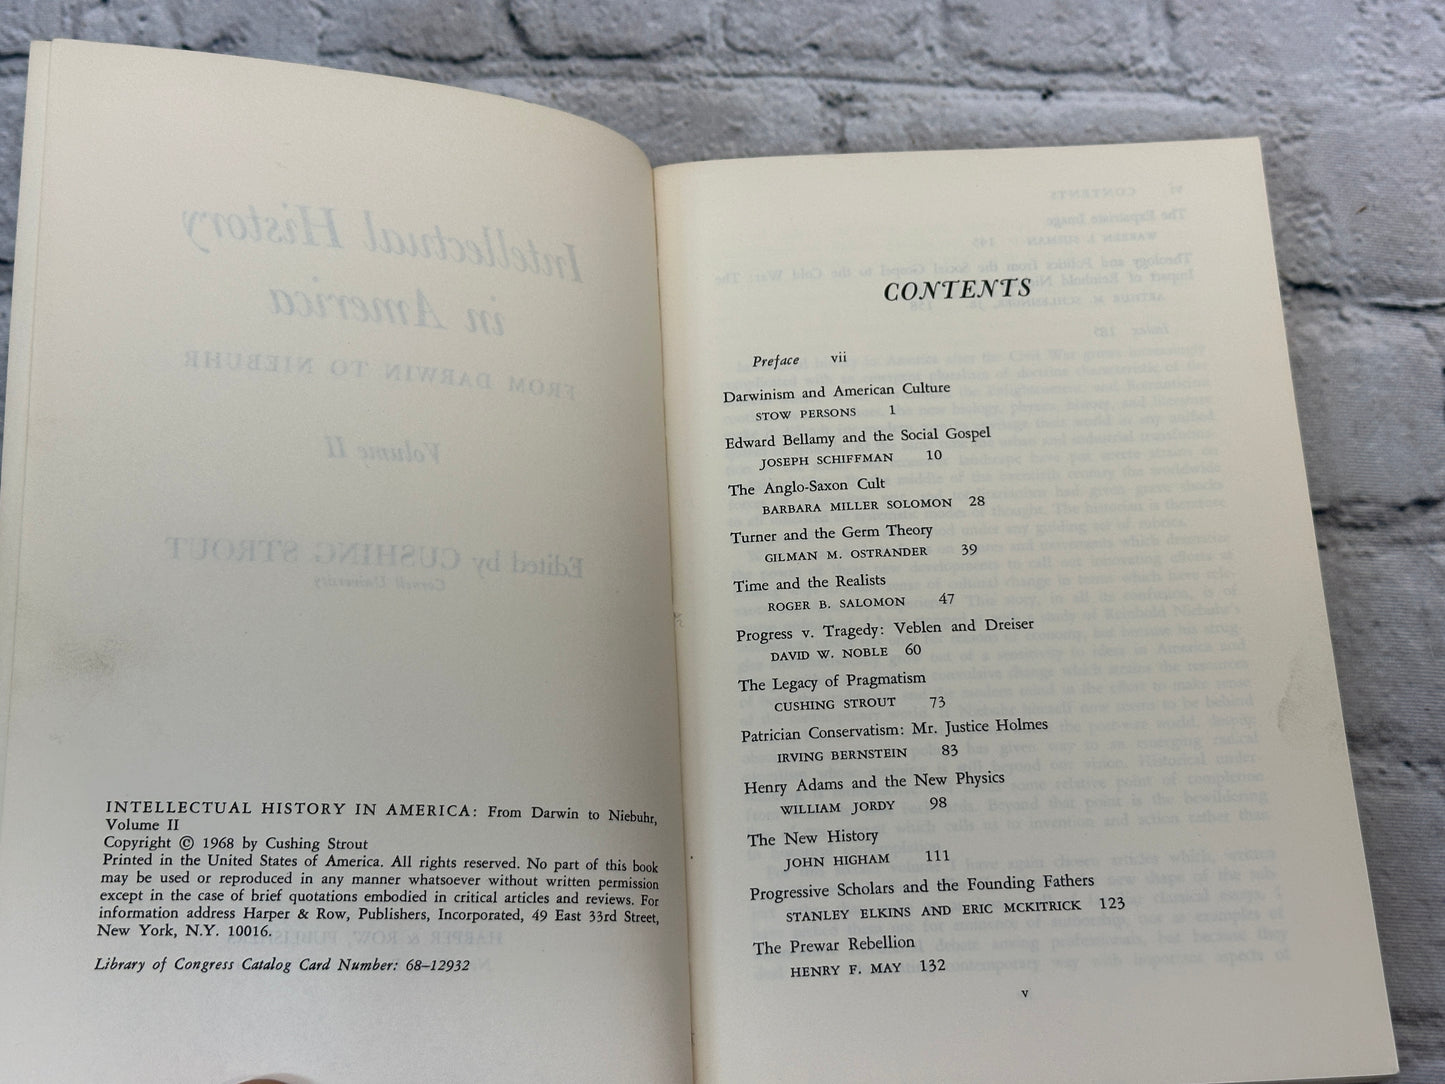 Intellectual History in America From Darwin to Nieburh Volume II [1968]